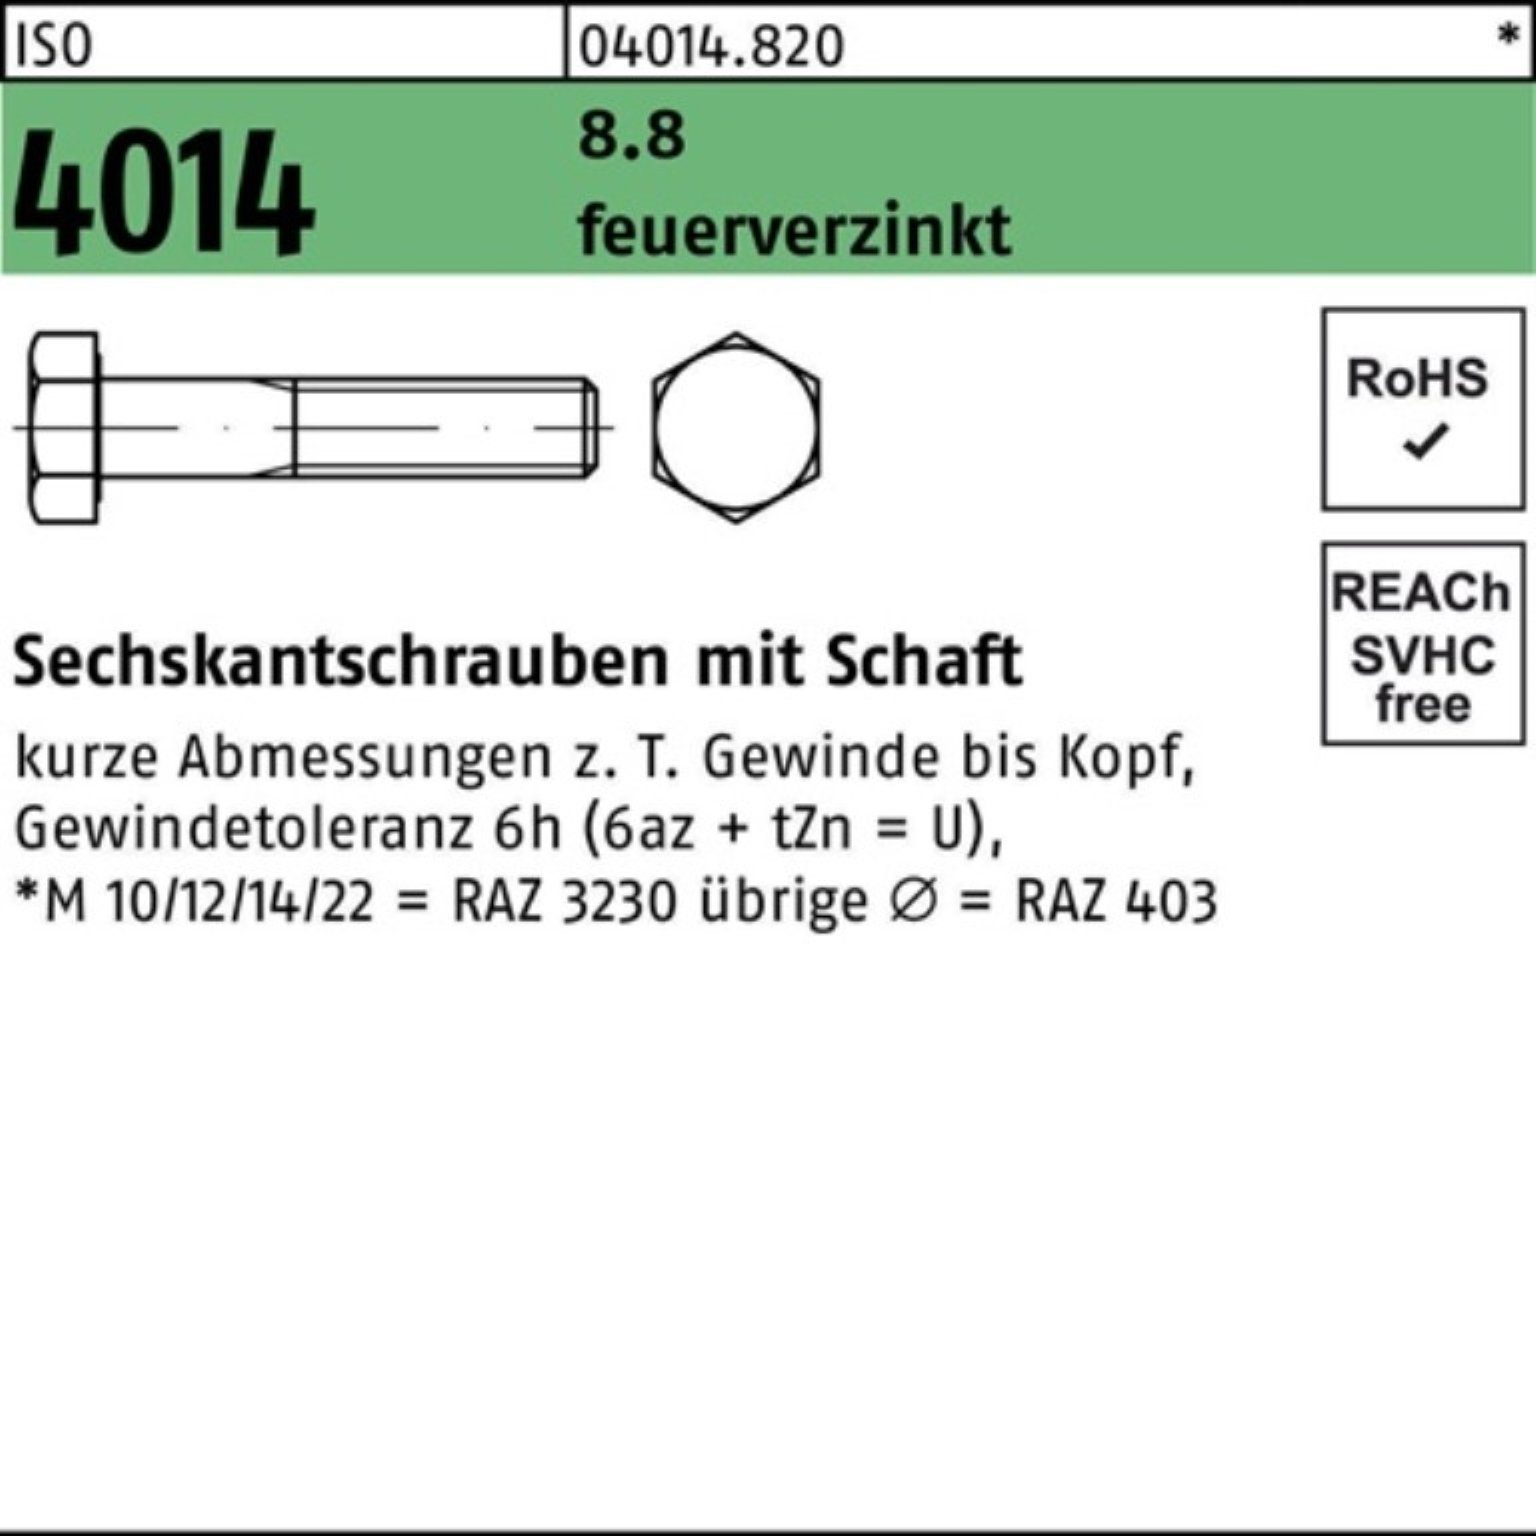 Bufab Sechskantschraube 200er Pack Sechskantschraube ISO 4014 Schaft M8x 40 8.8 feuerverz. 200